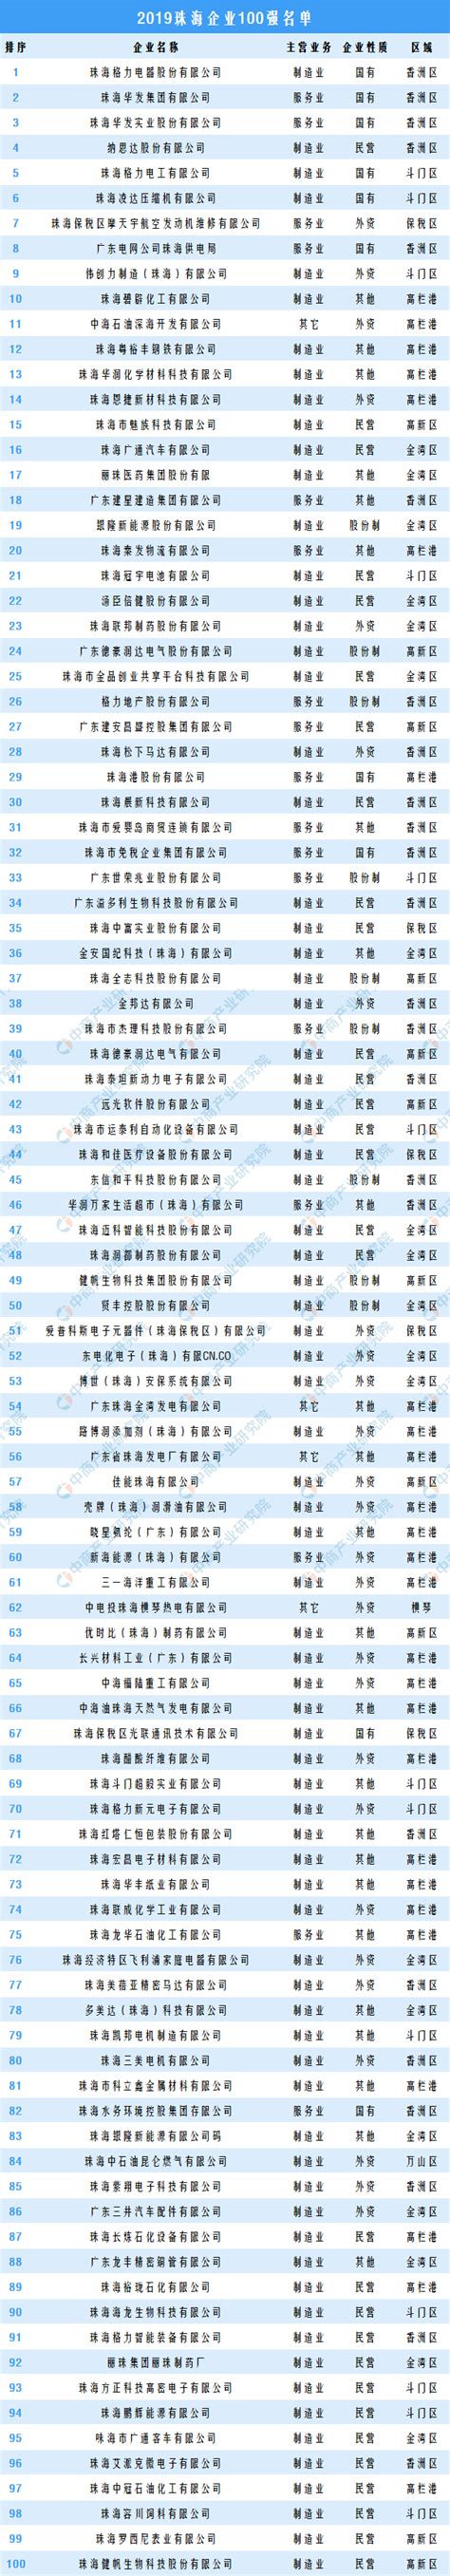 2019年珠海企业100强排行榜-排行榜-中商情报网